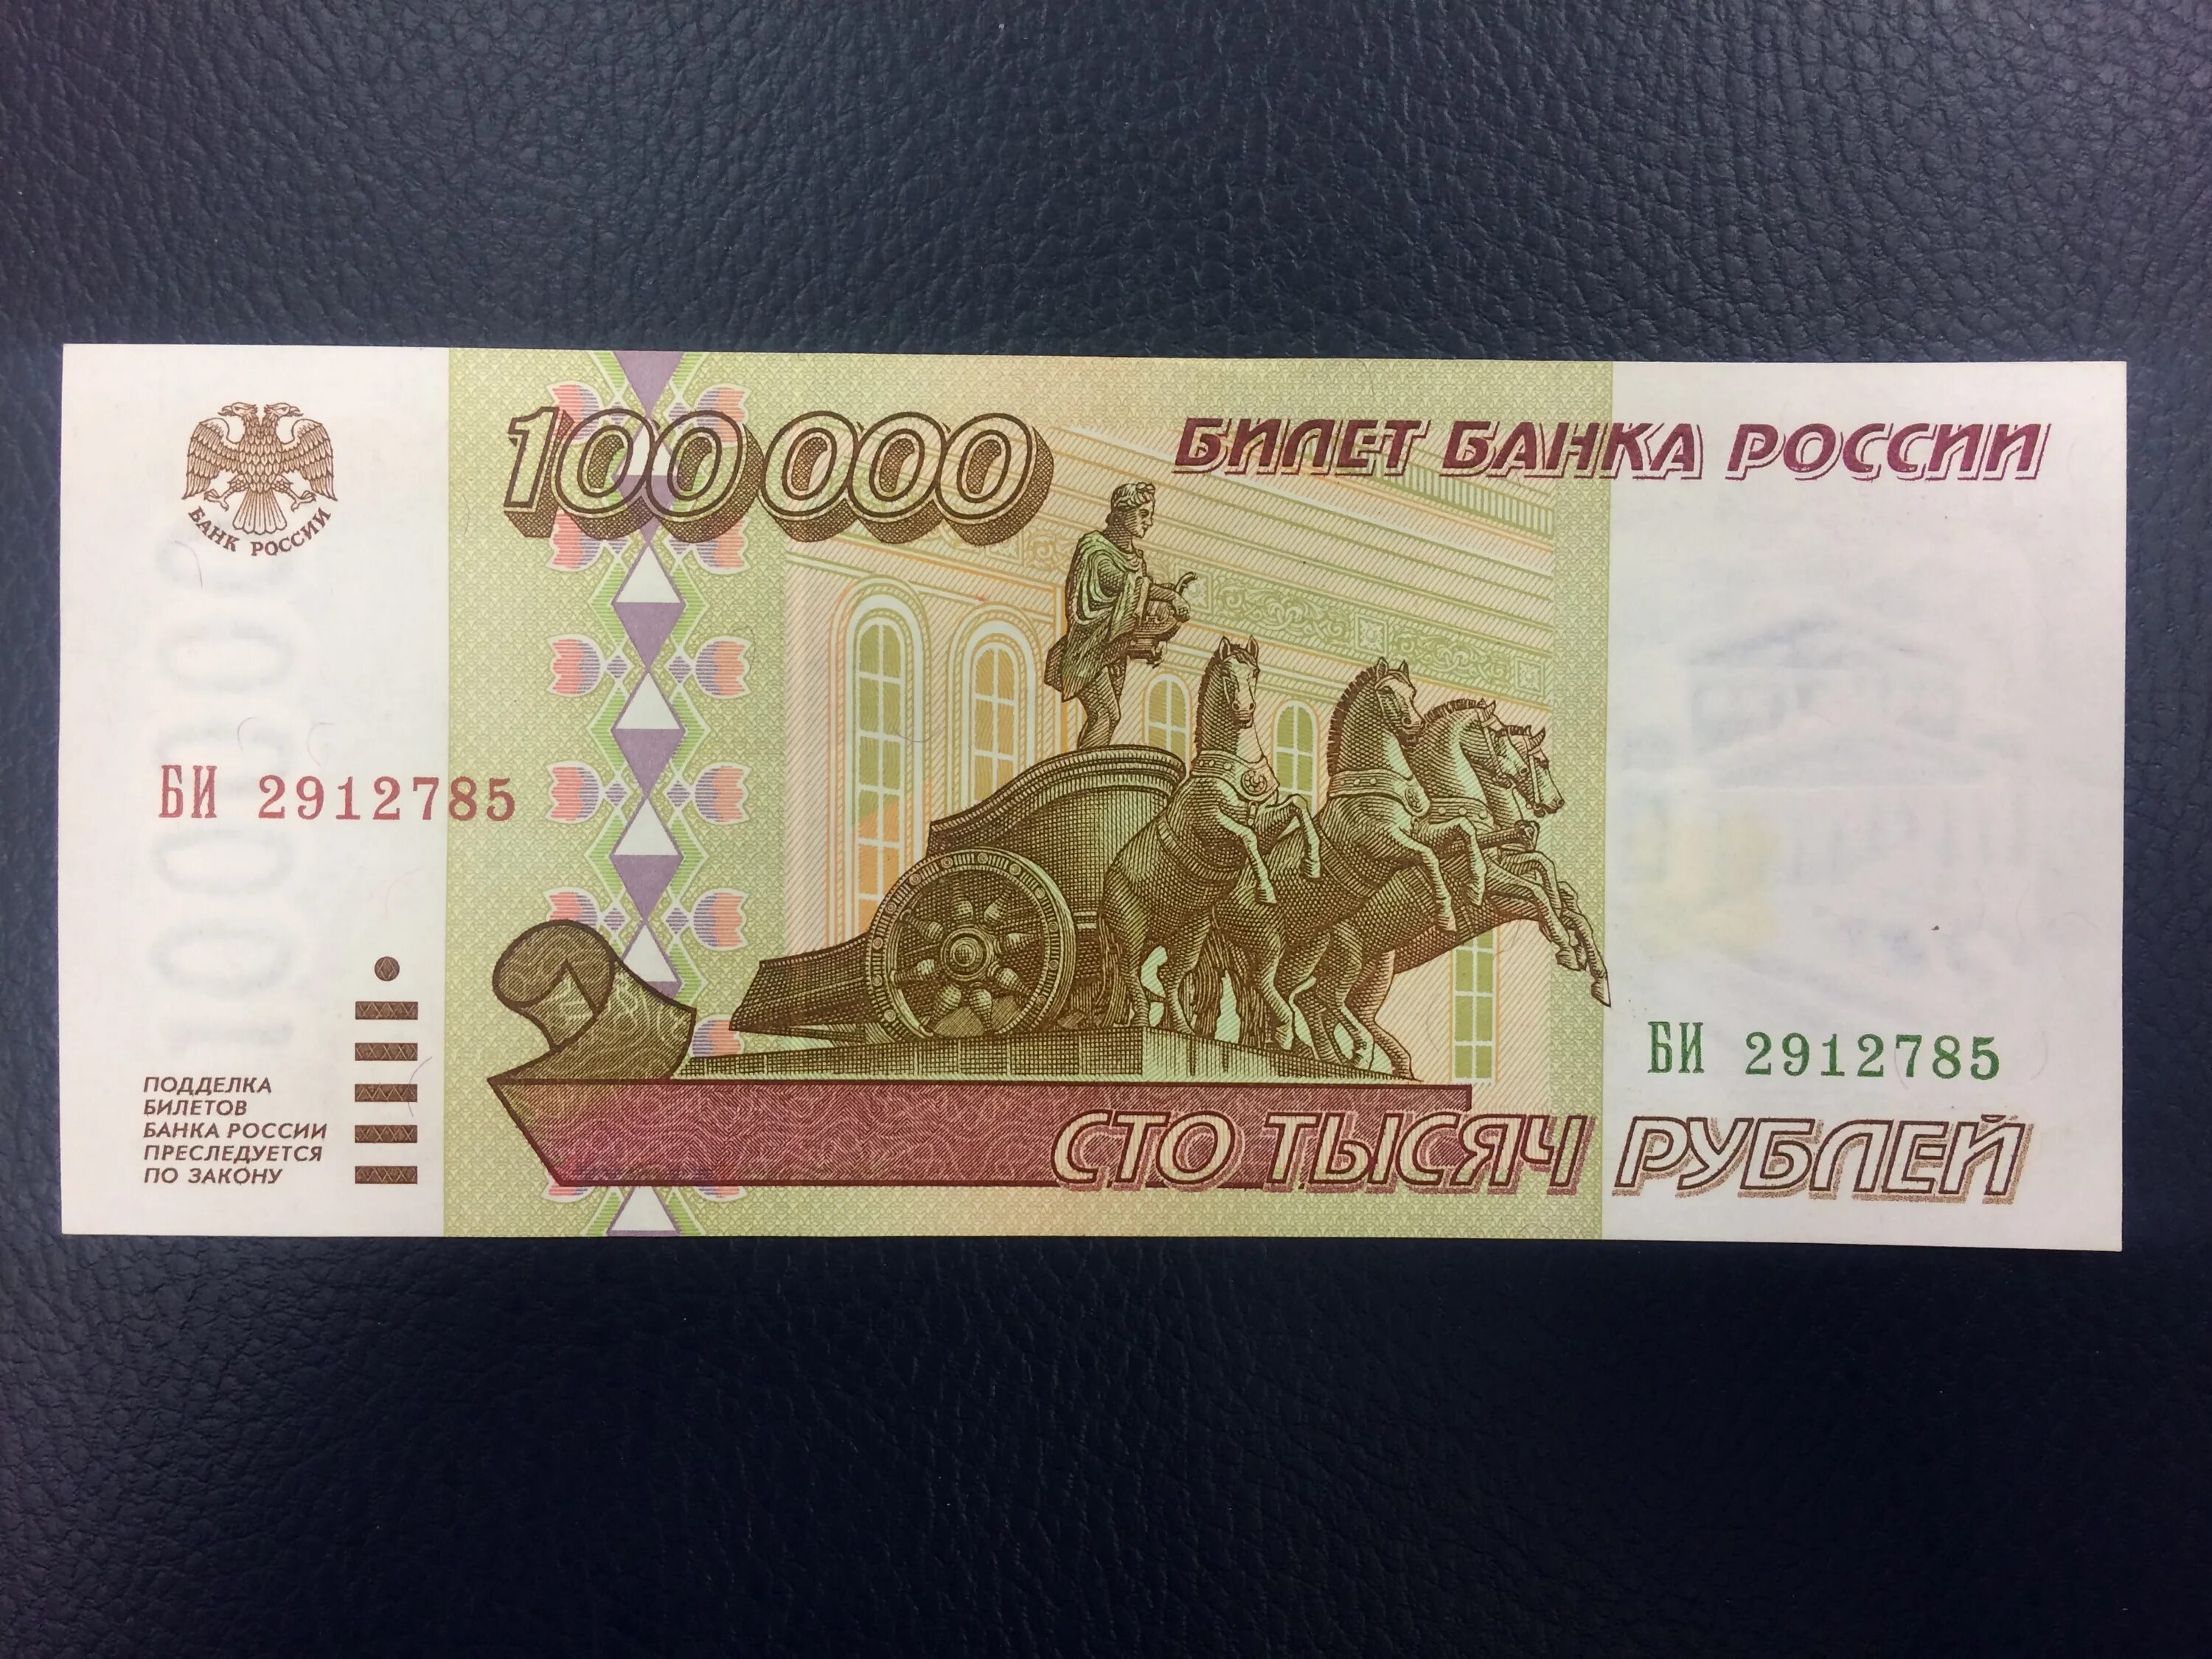 100000 Рублей. 100000 Рублей 1995 года. Купюра 100000 рублей. 100 Рублей 1995 года. 100000 рублей 20